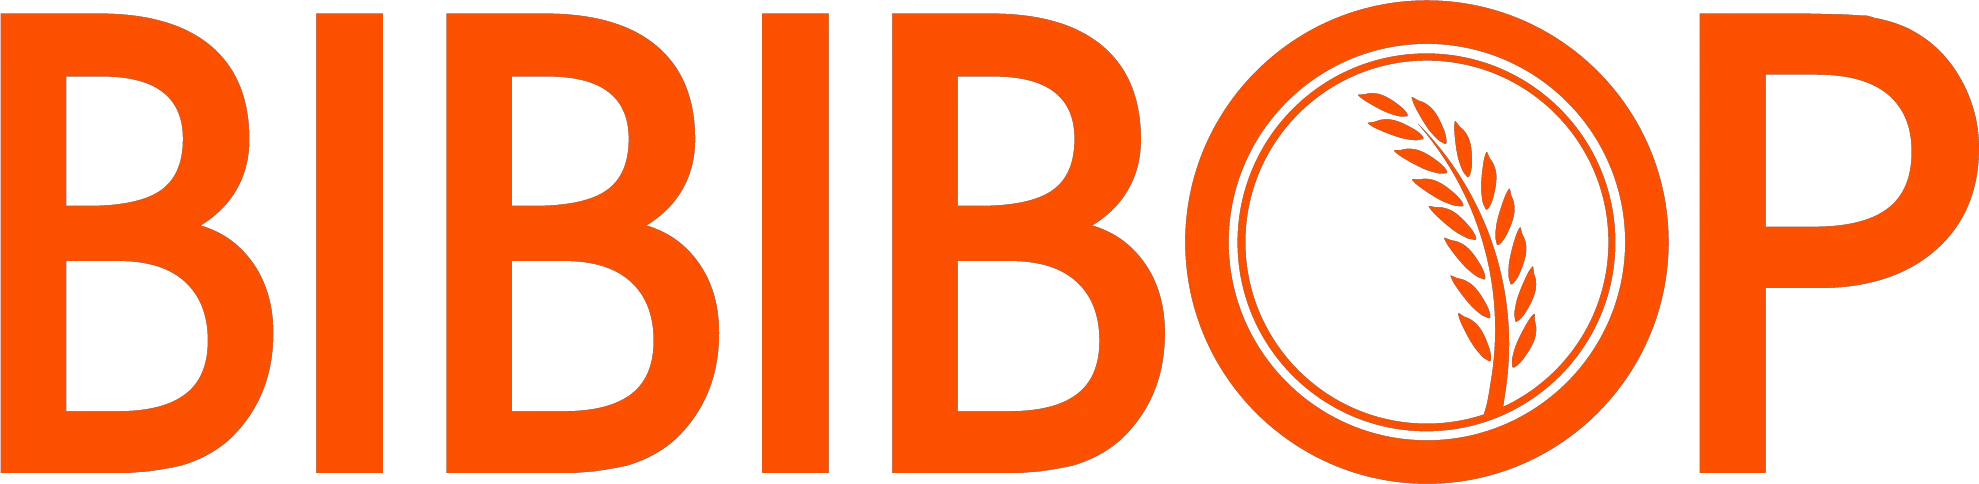 bibibop.com